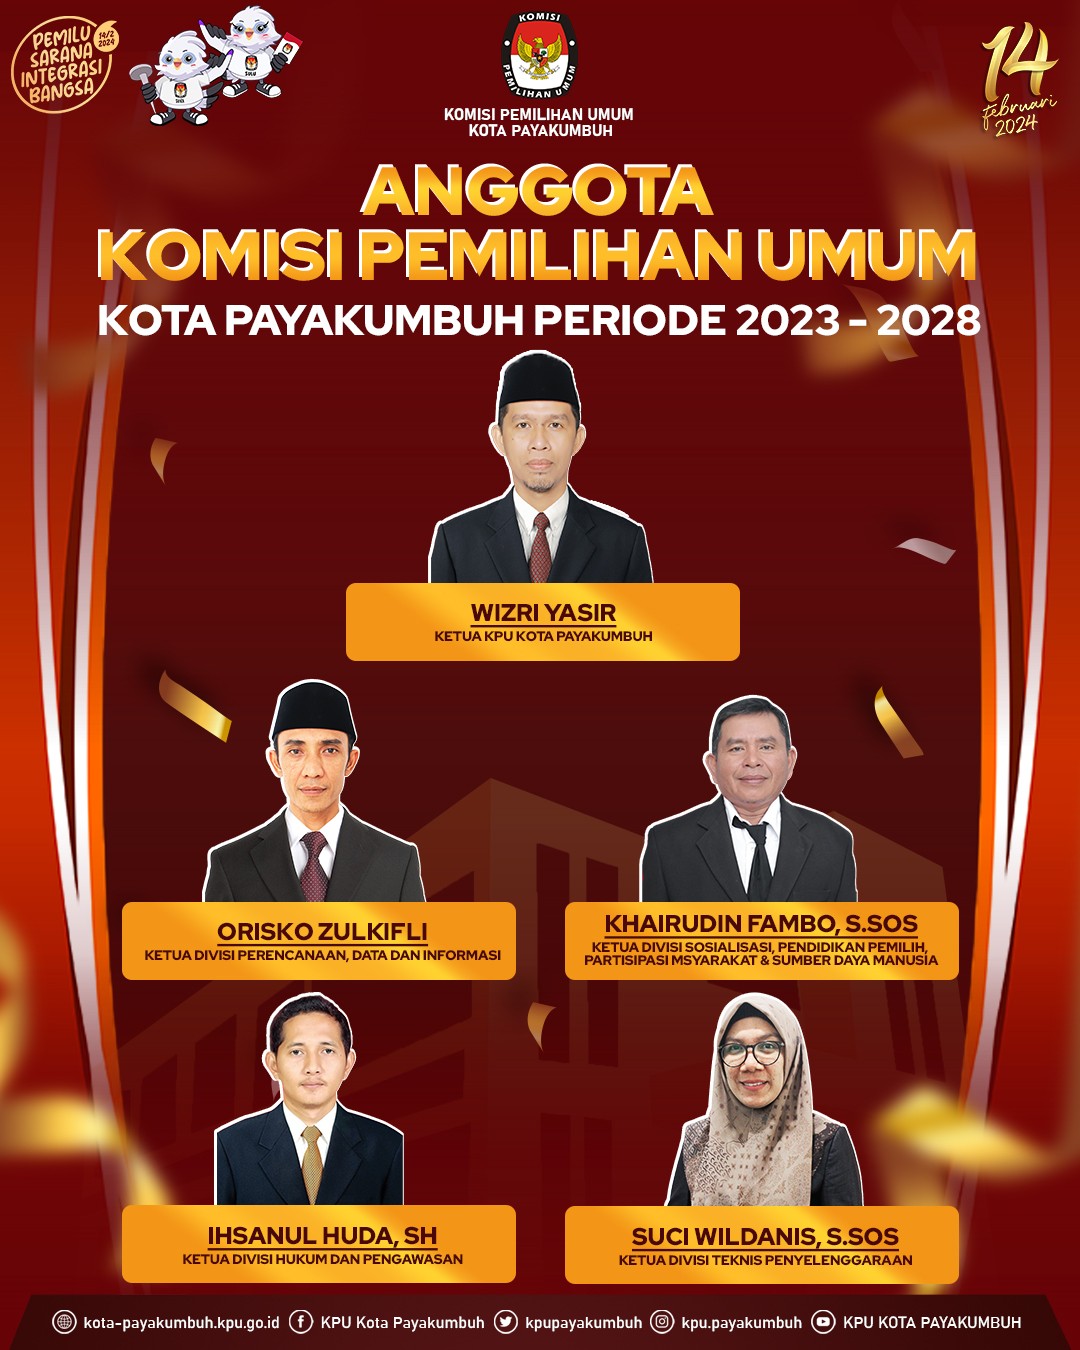 Anggota KPU Kota Payakumbuh Periode 2023 - 2028